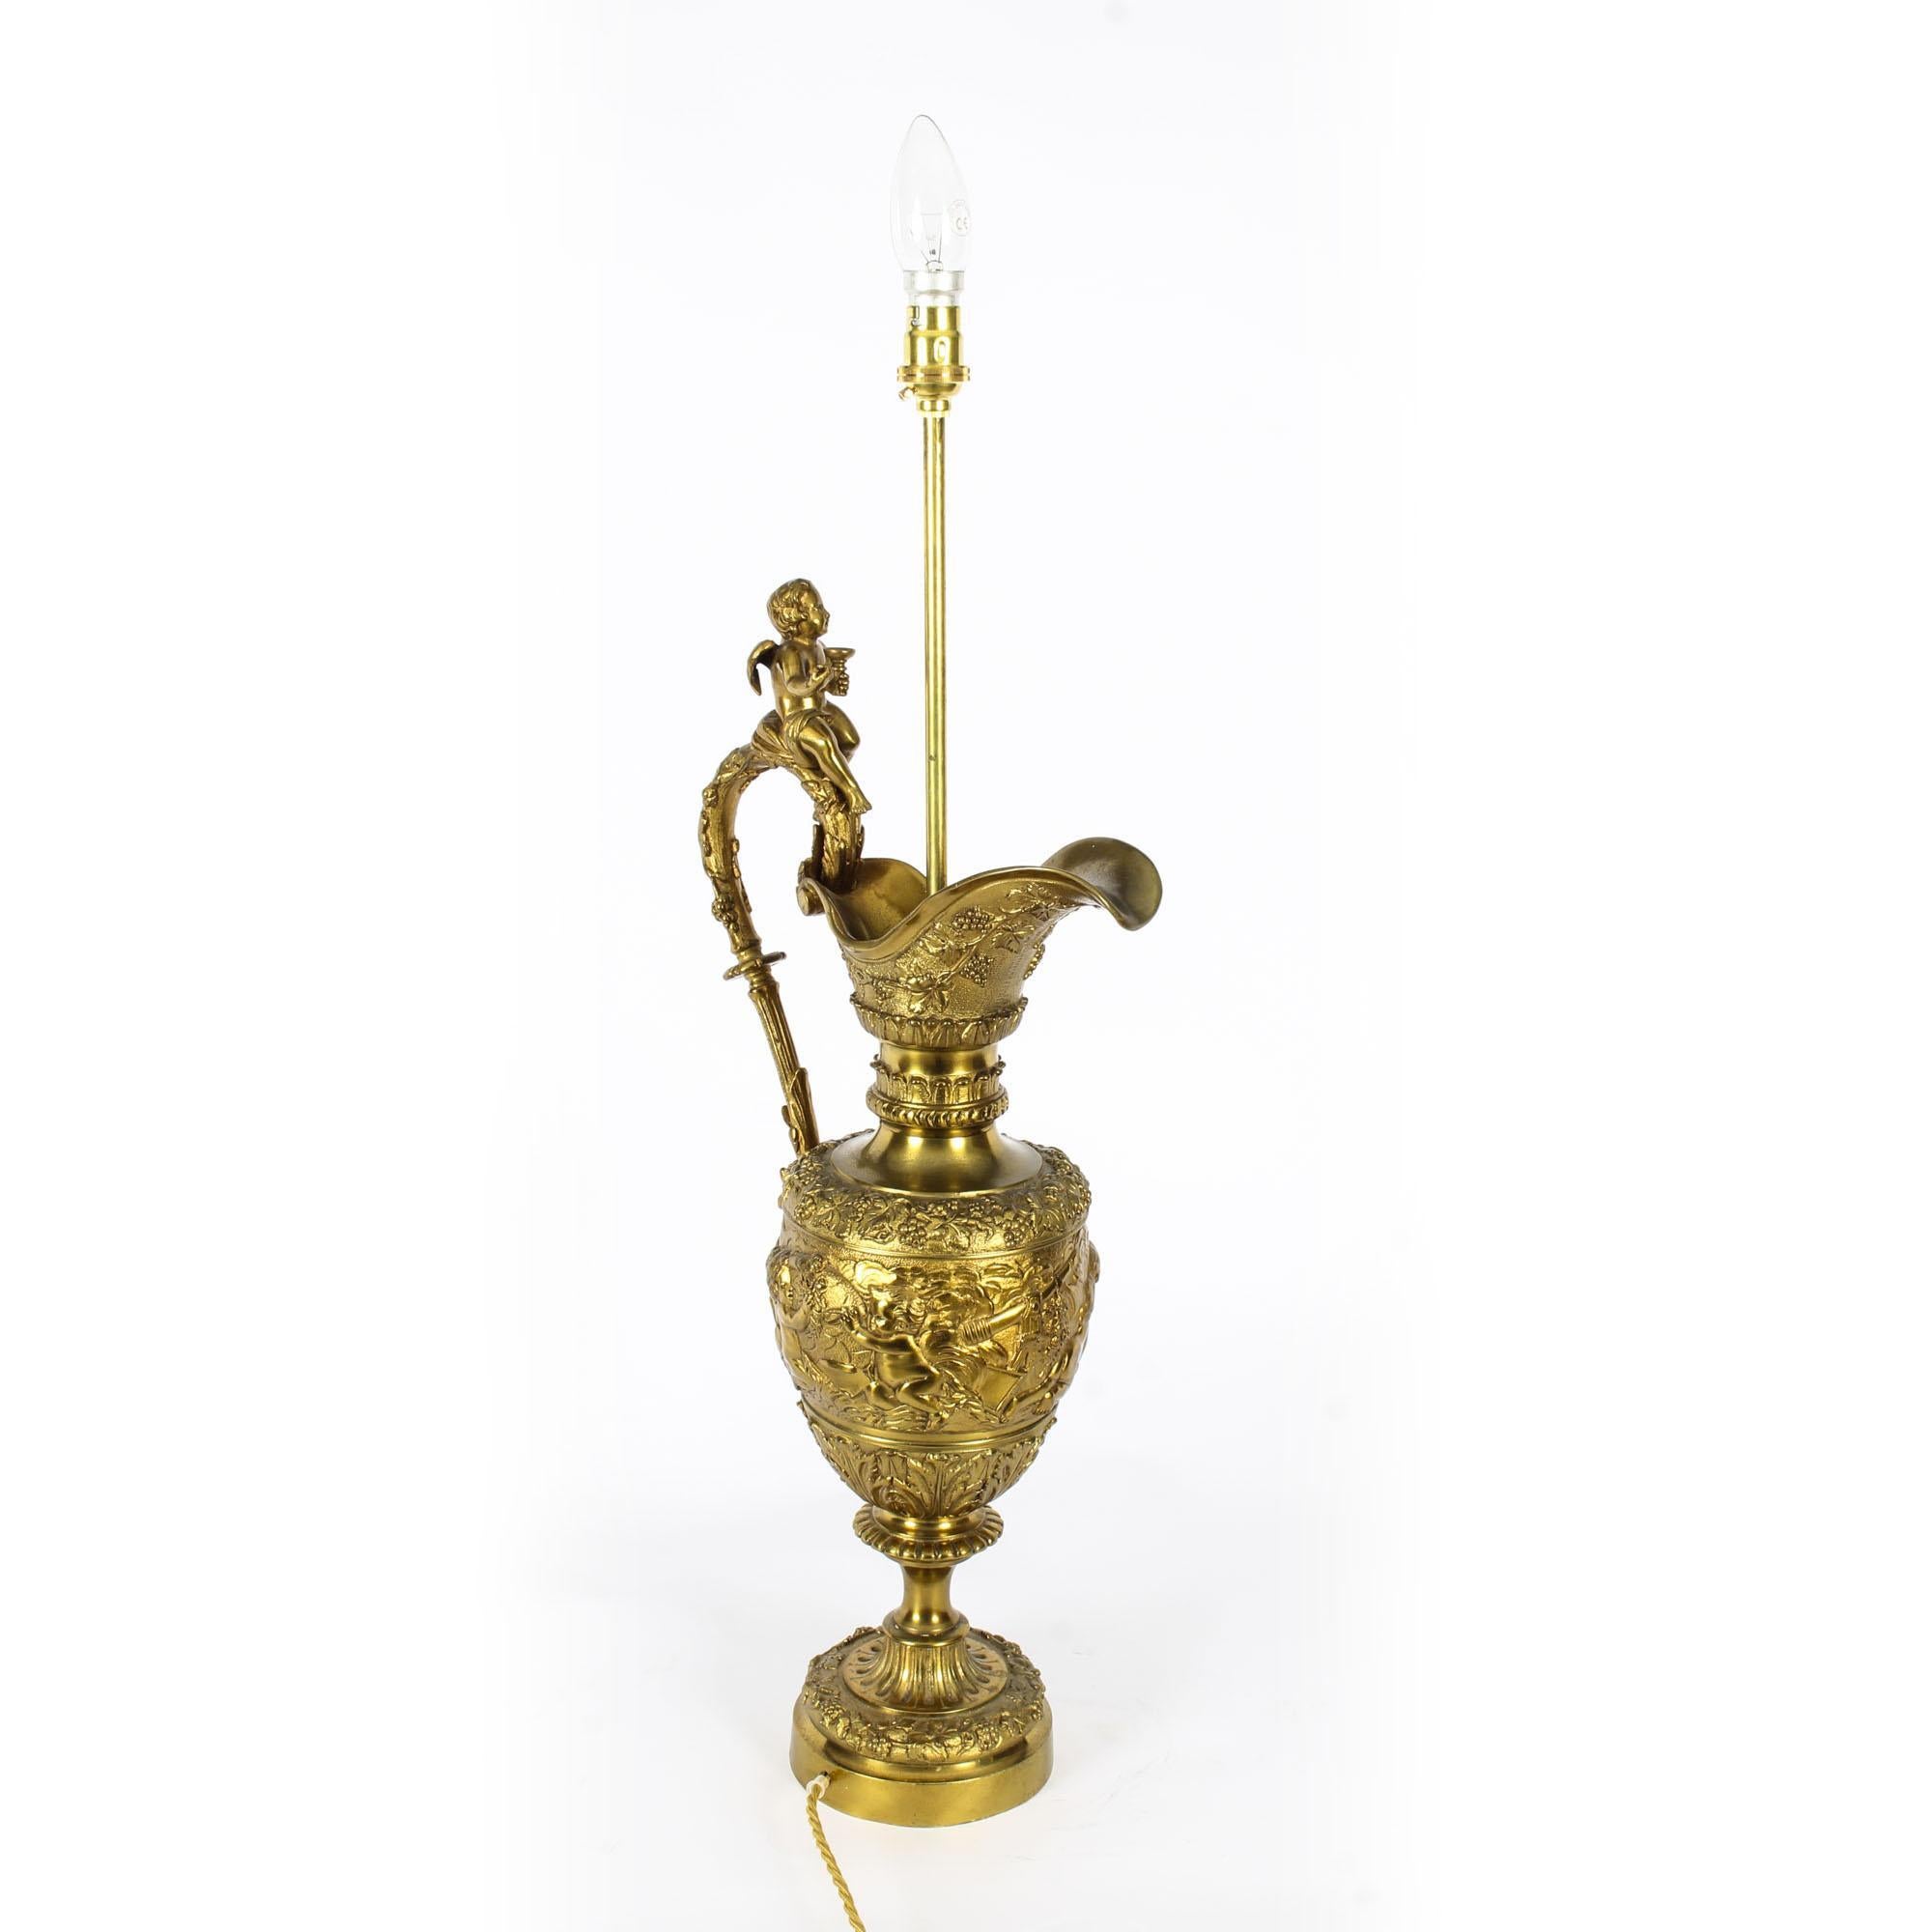 French Antique Gilt Bronze Renaissance Revival Table Lamp, 19th Century For Sale